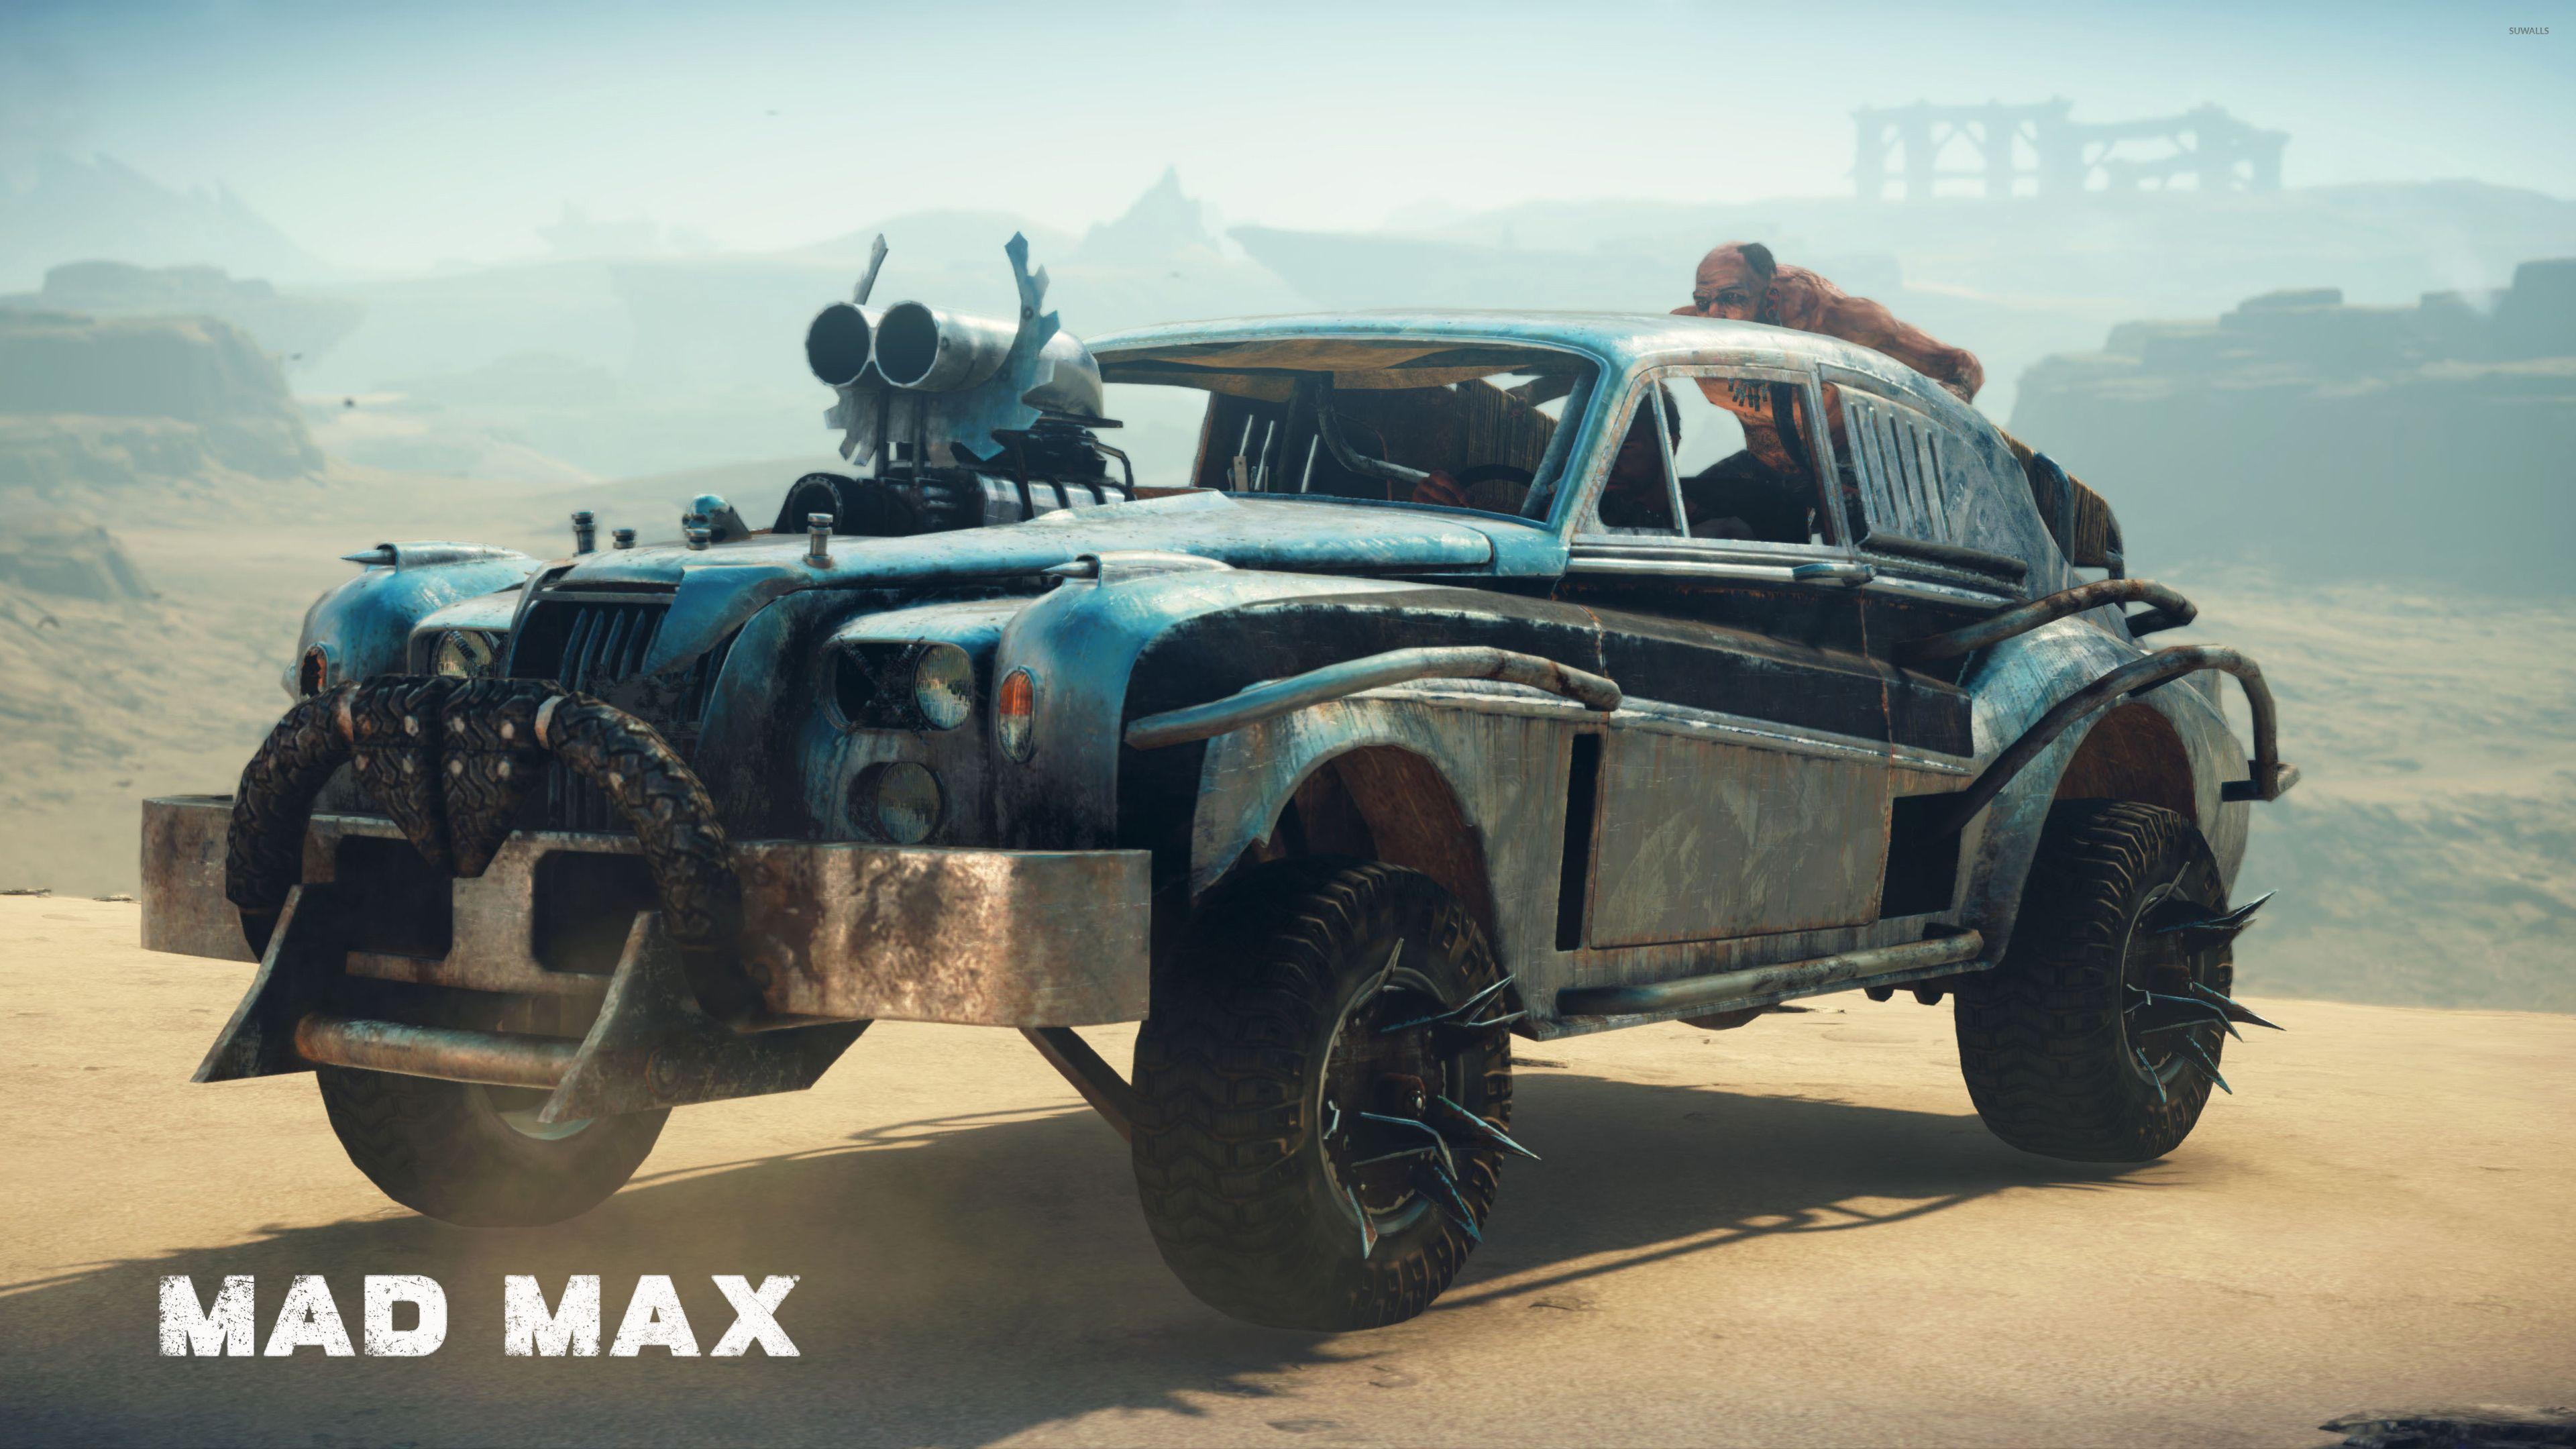 Mad Max car wallpaper wallpaper .suwalls.com